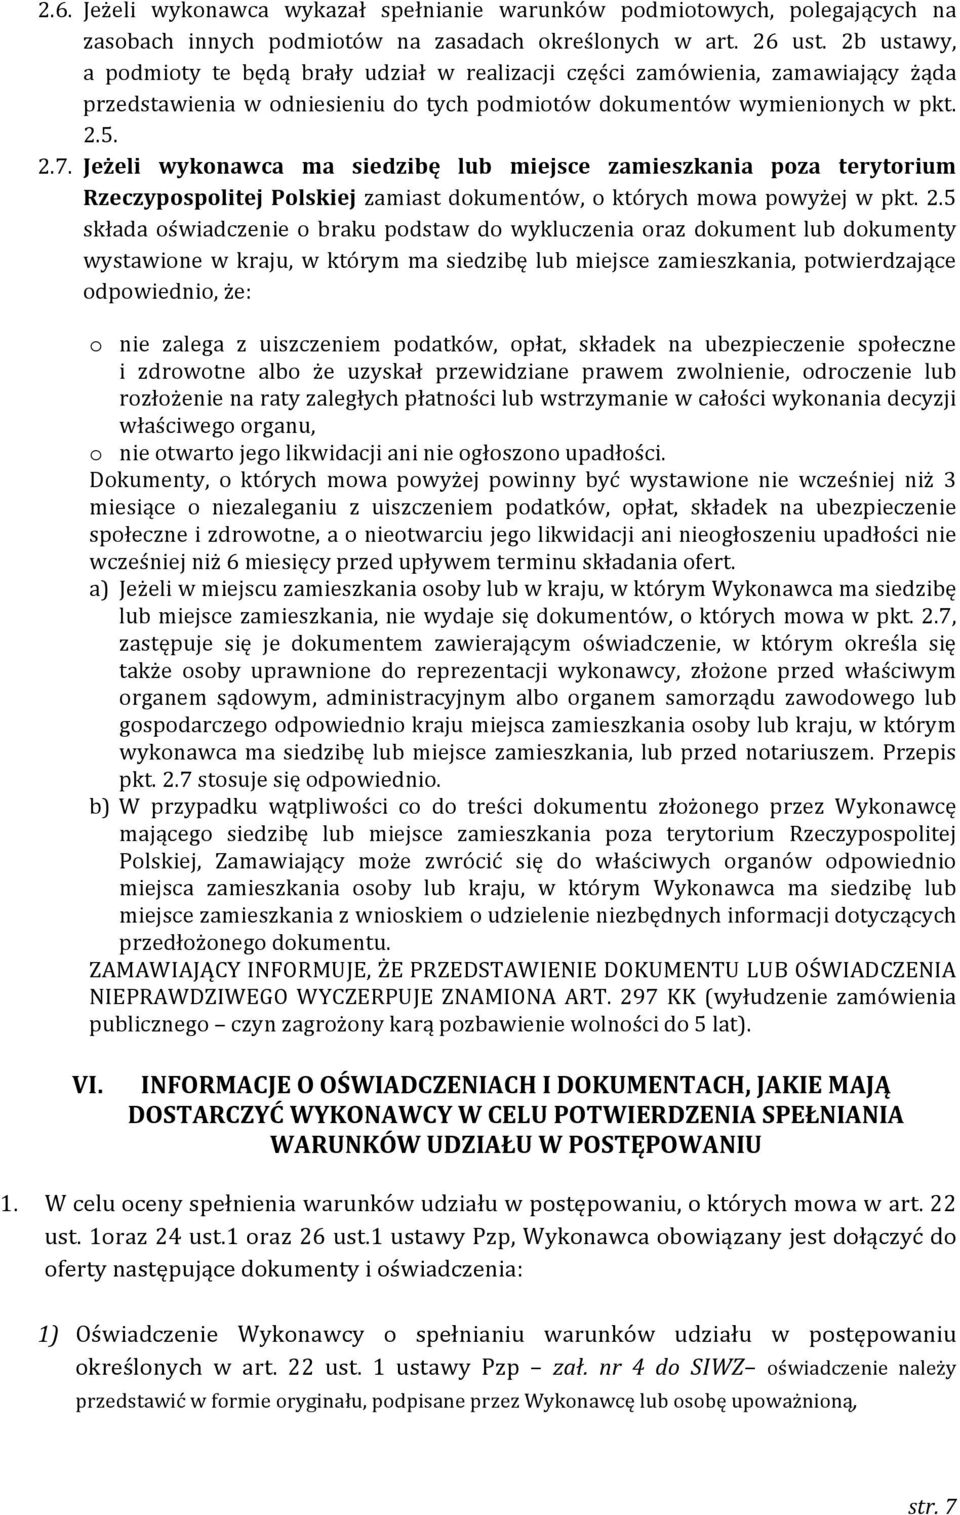 Jeżeli wykonawca ma siedzibę lub miejsce zamieszkania poza terytorium Rzeczypospolitej Polskiej zamiast dokumentów, o których mowa powyżej w pkt. 2.